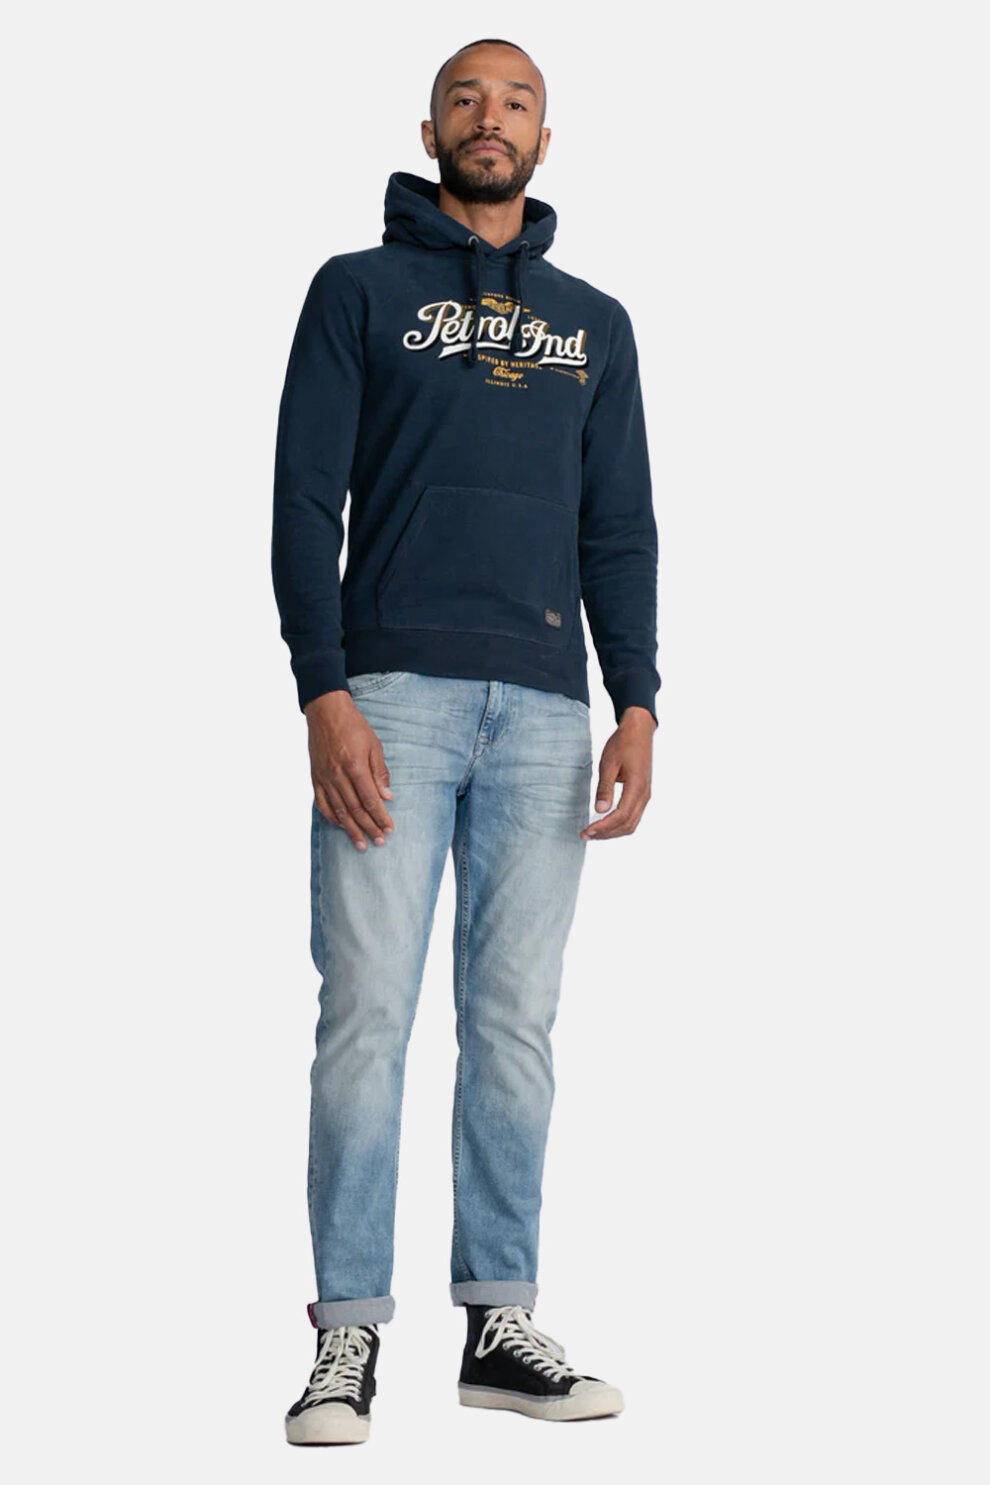 MUŠKARCI - Majice - Petrol hoodie s kapuljačom - Dugi rukavi - Plava